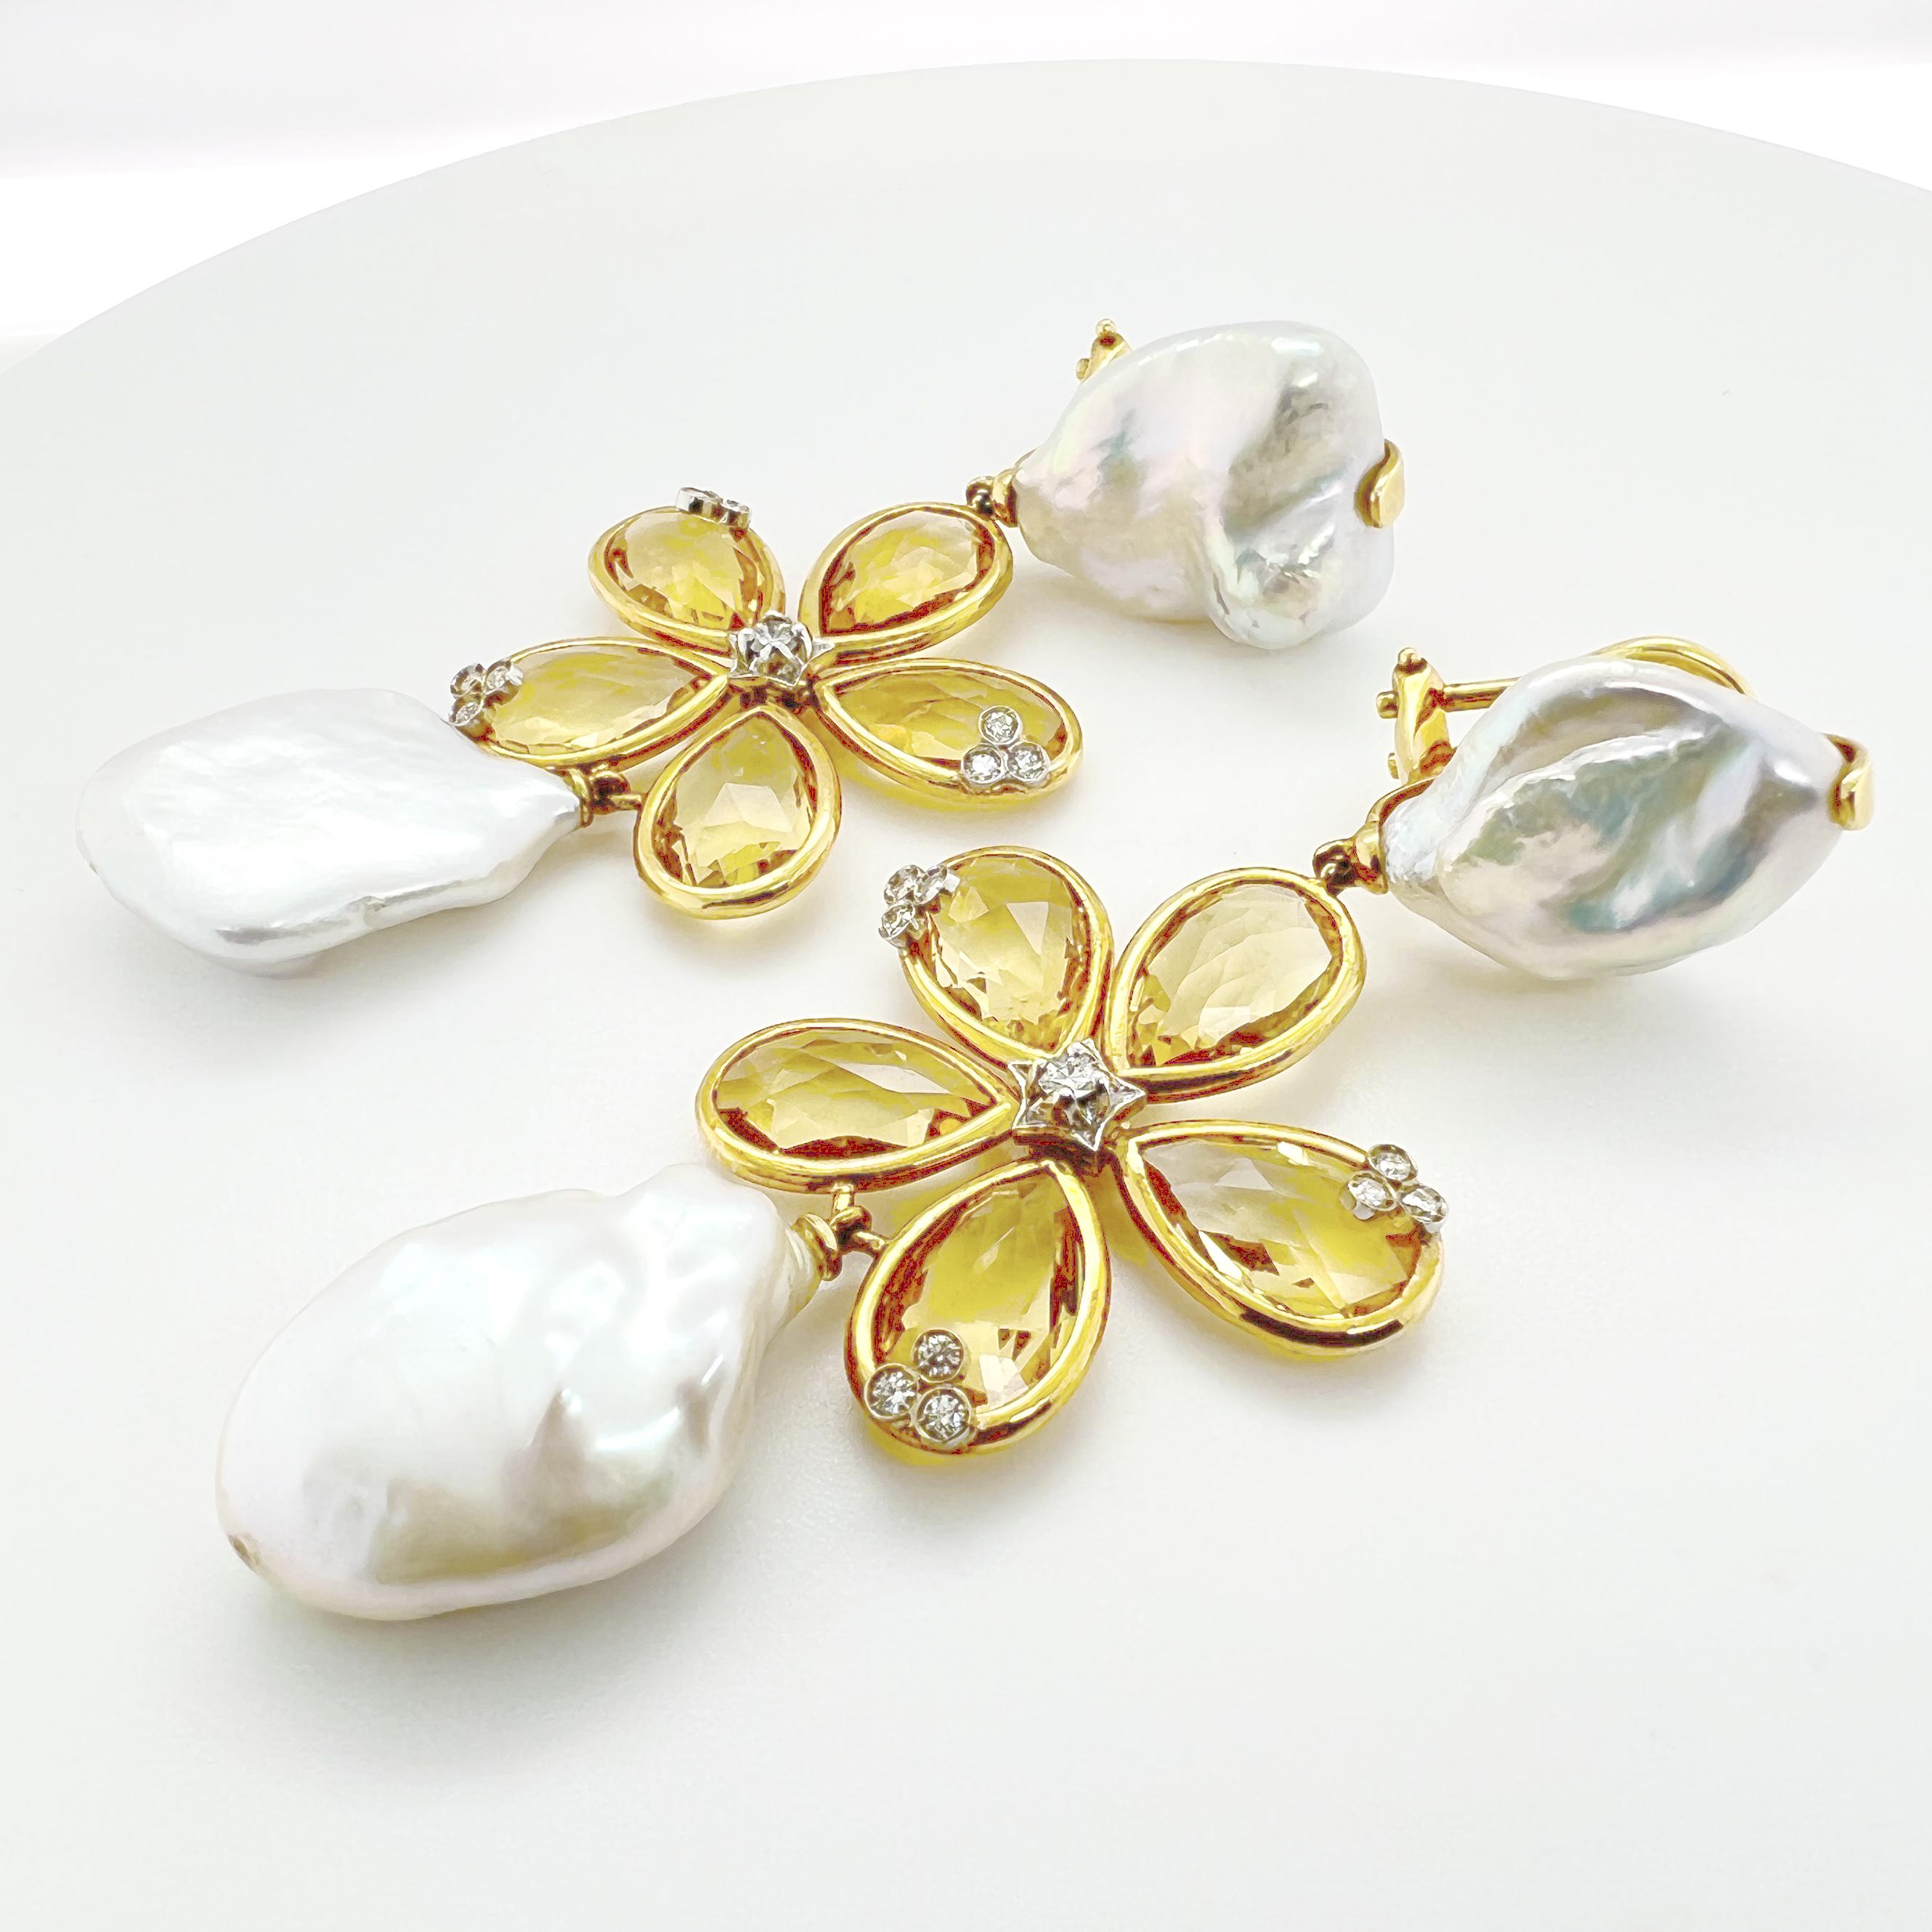 Dieses Armband aus 18-karätigem Gelbgold zeigt ein zartes Blumendesign mit Citrinquarz, Perlen und Diamanten. Das Blumenmotiv verleiht dem Armband einen skurrilen und femininen Touch, während die Citrin-Quarzsteine dem Schmuckstück eine leuchtende